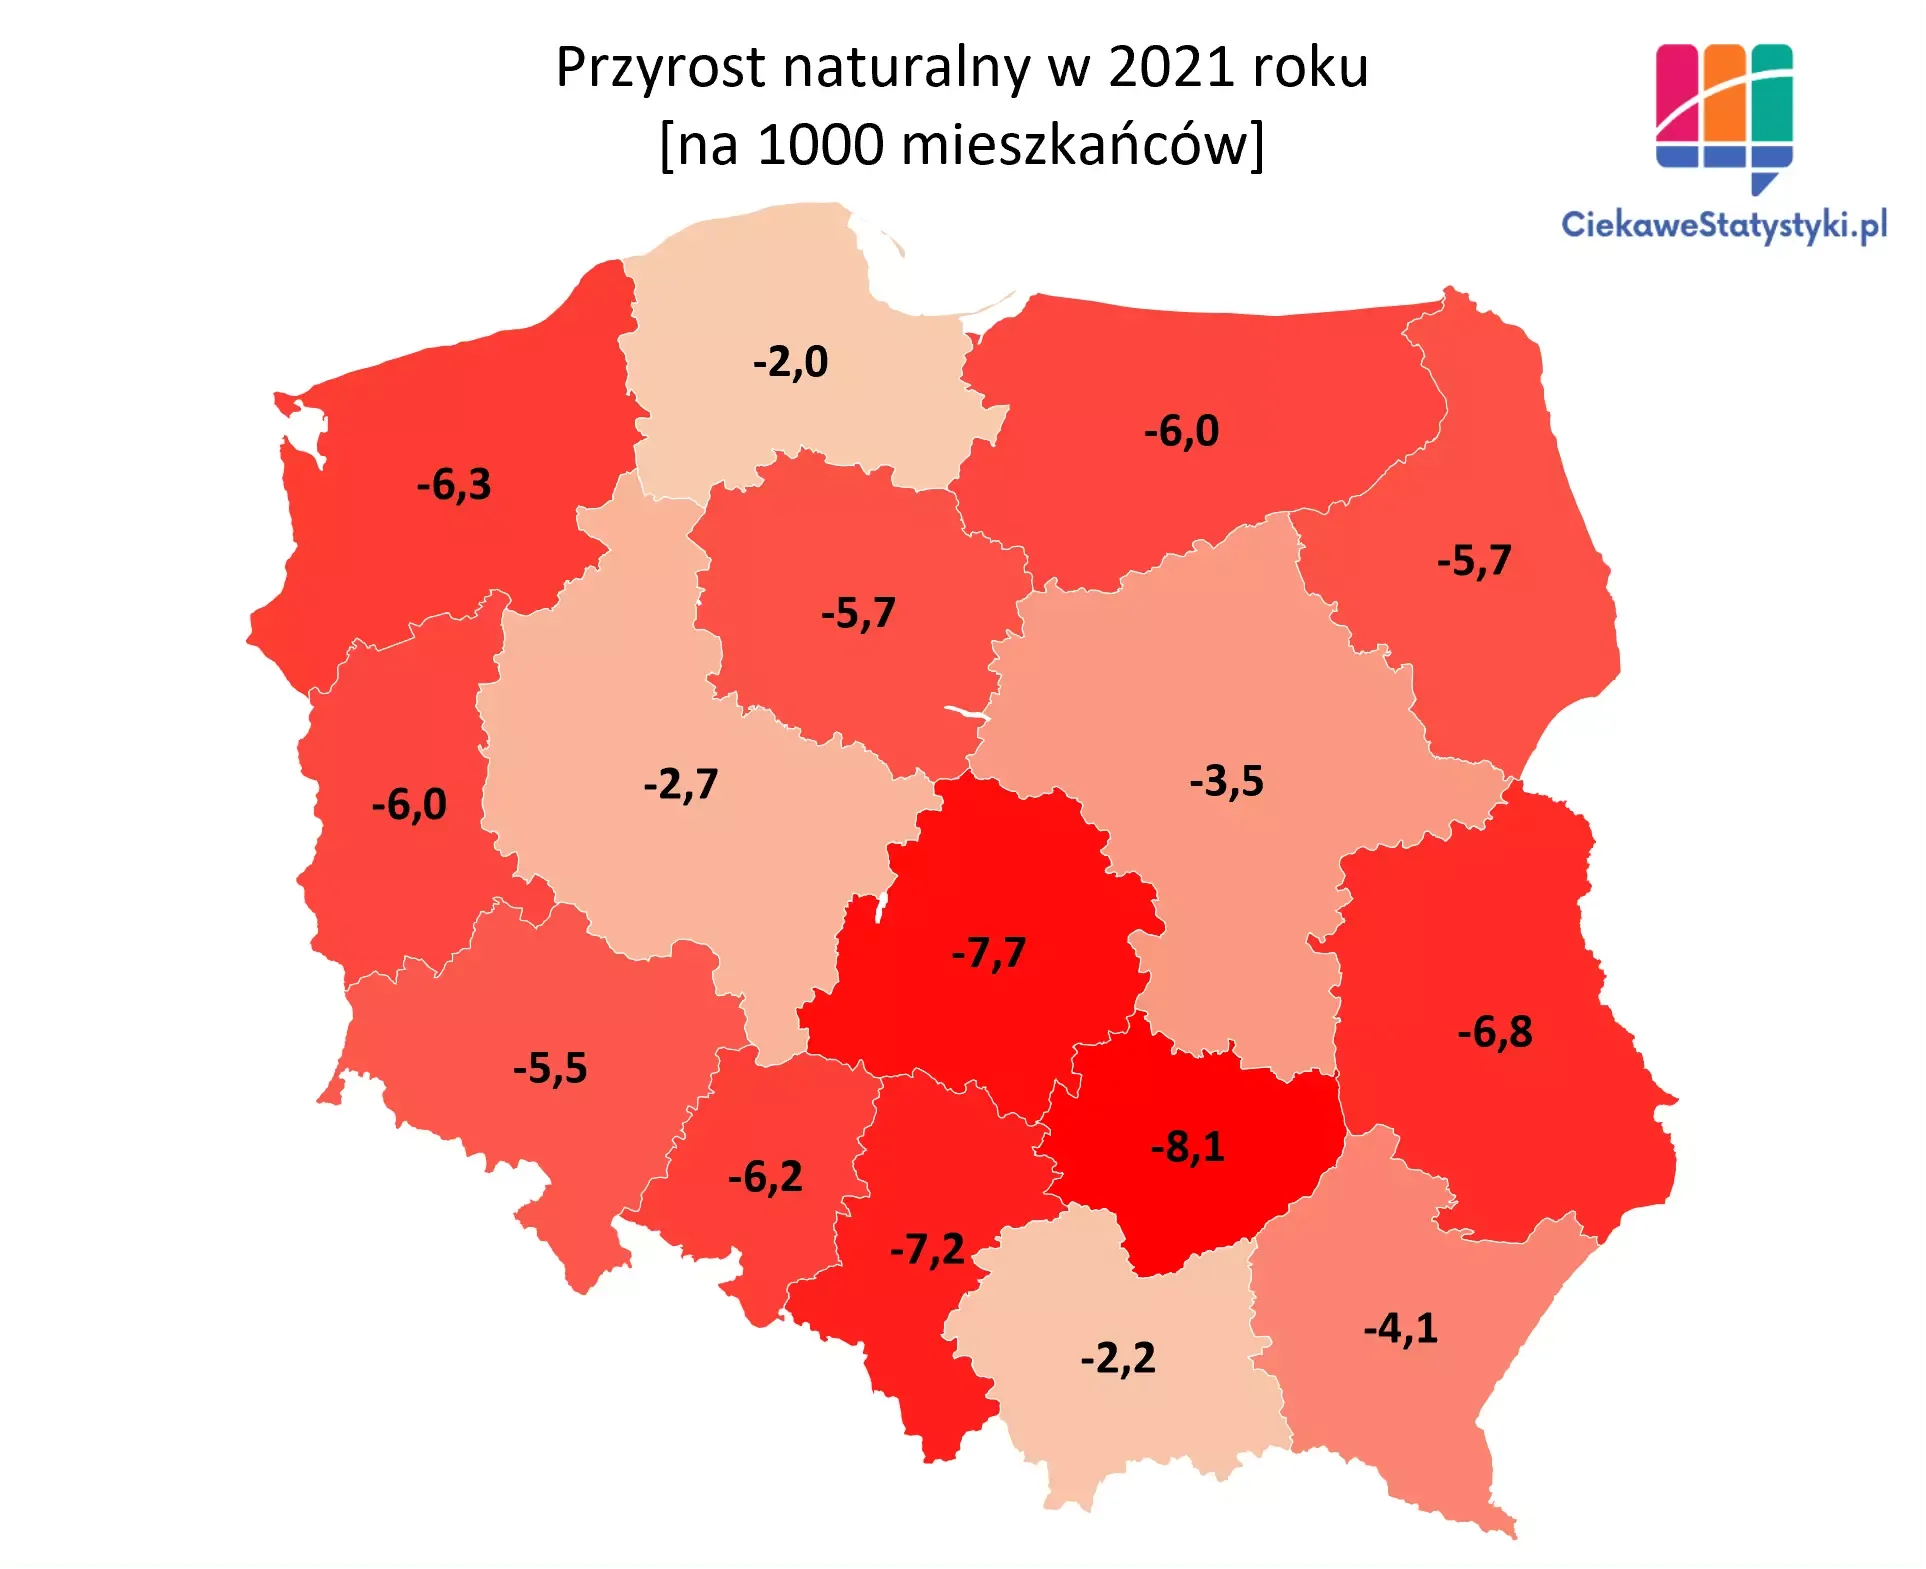 Mapa przedstawia przyrost naturalny w Polsce wg województw